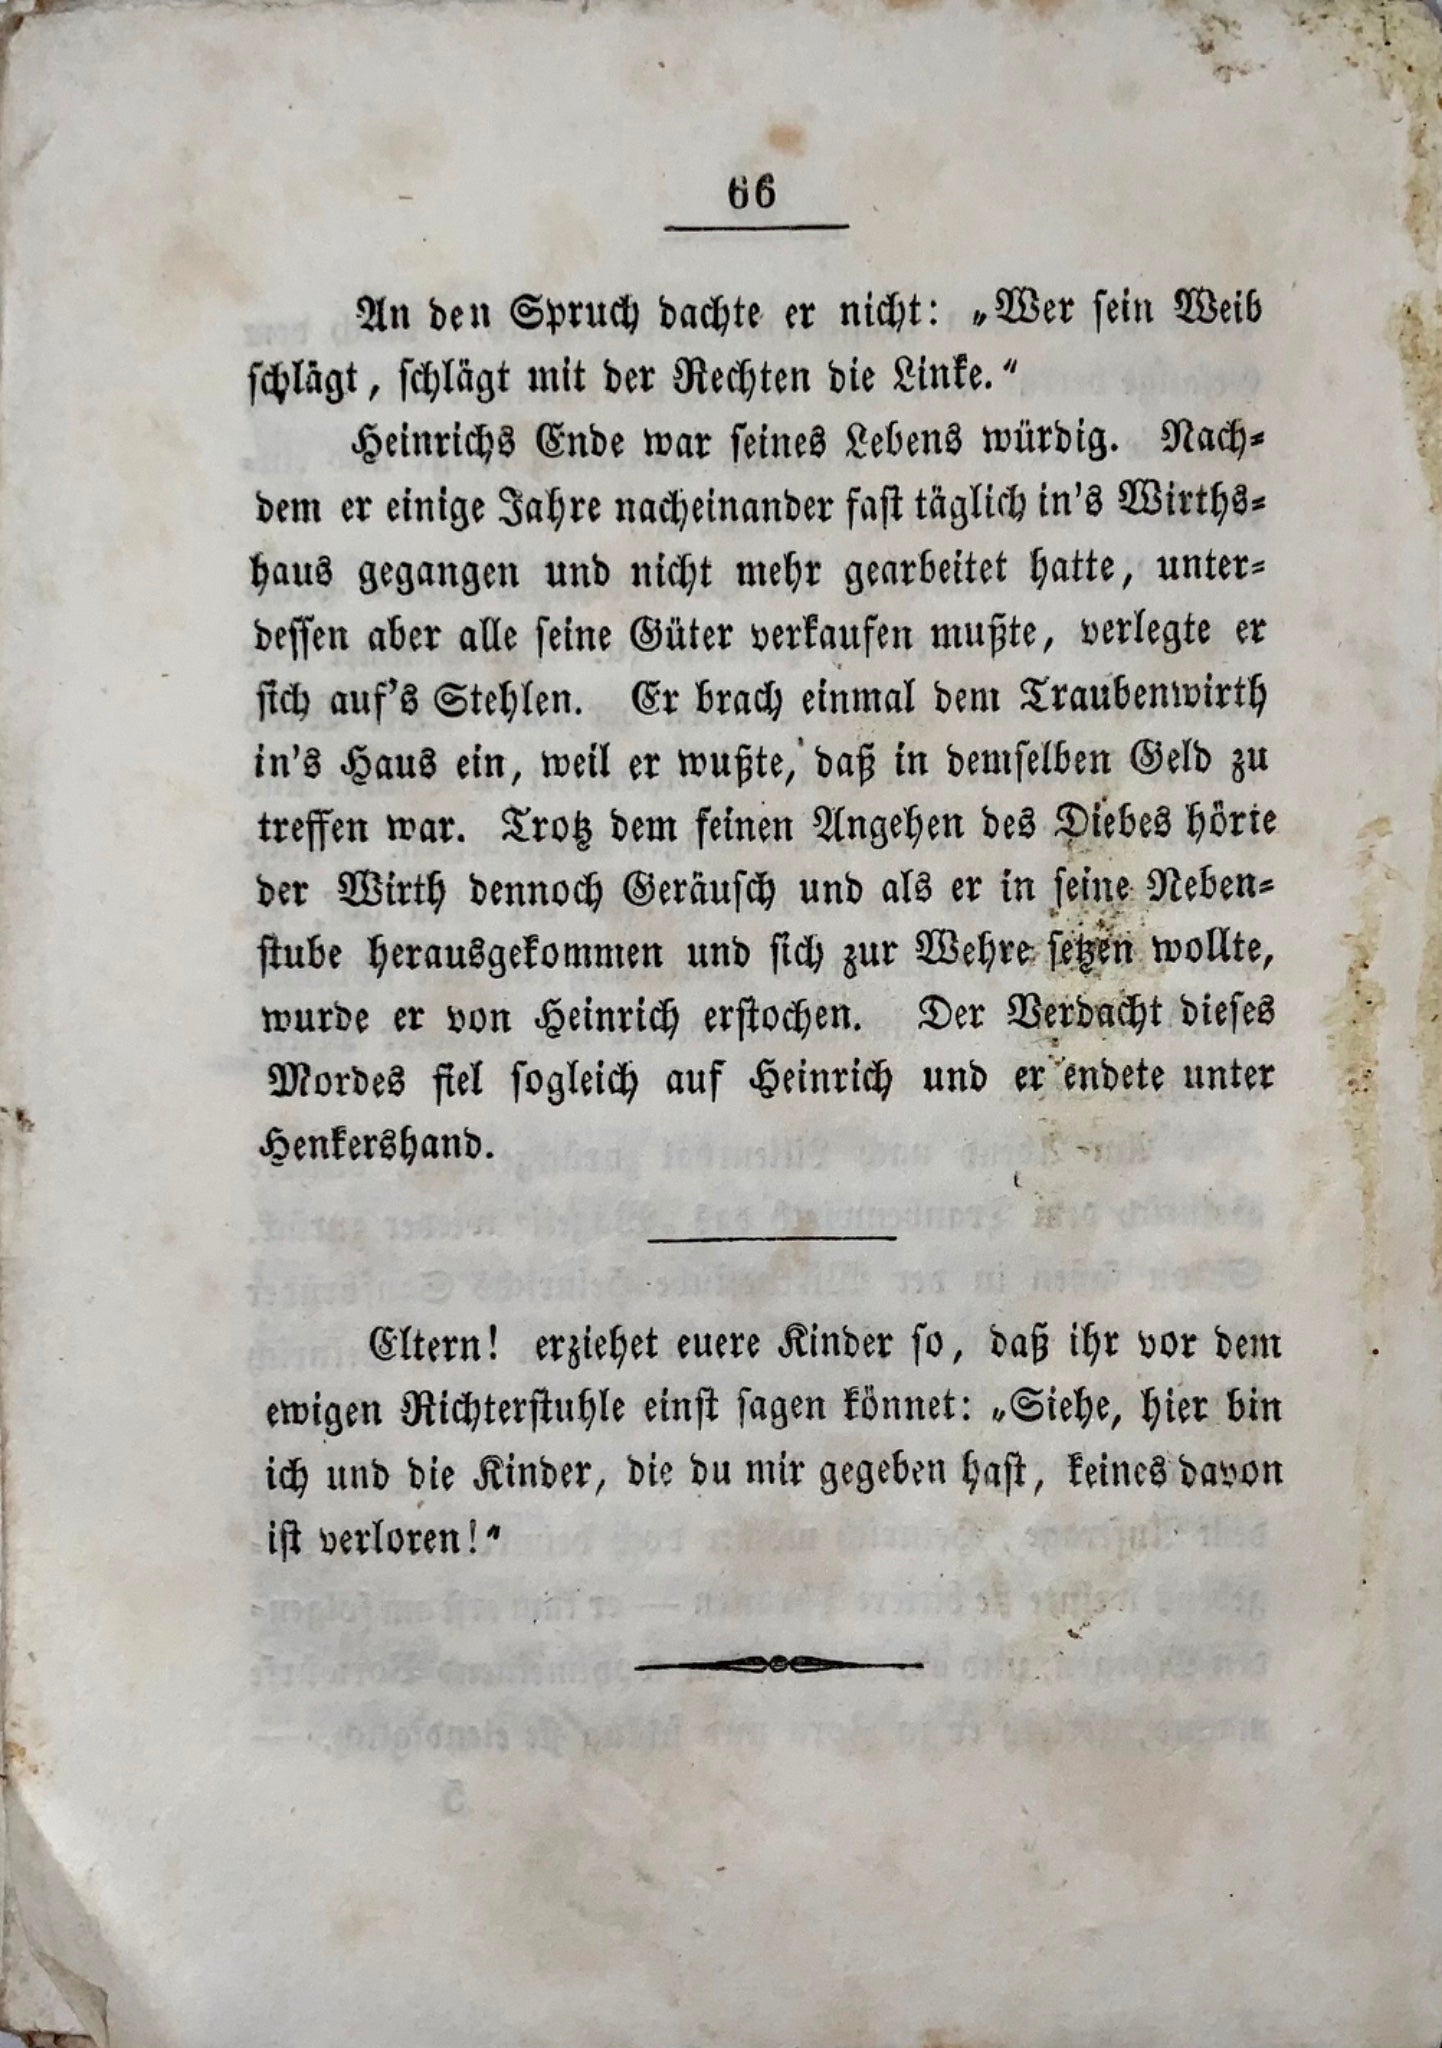 1847 Giovanili. Heinrich Gotterbarm. Un ammonimento per i cattivi genitori. Helvetica.